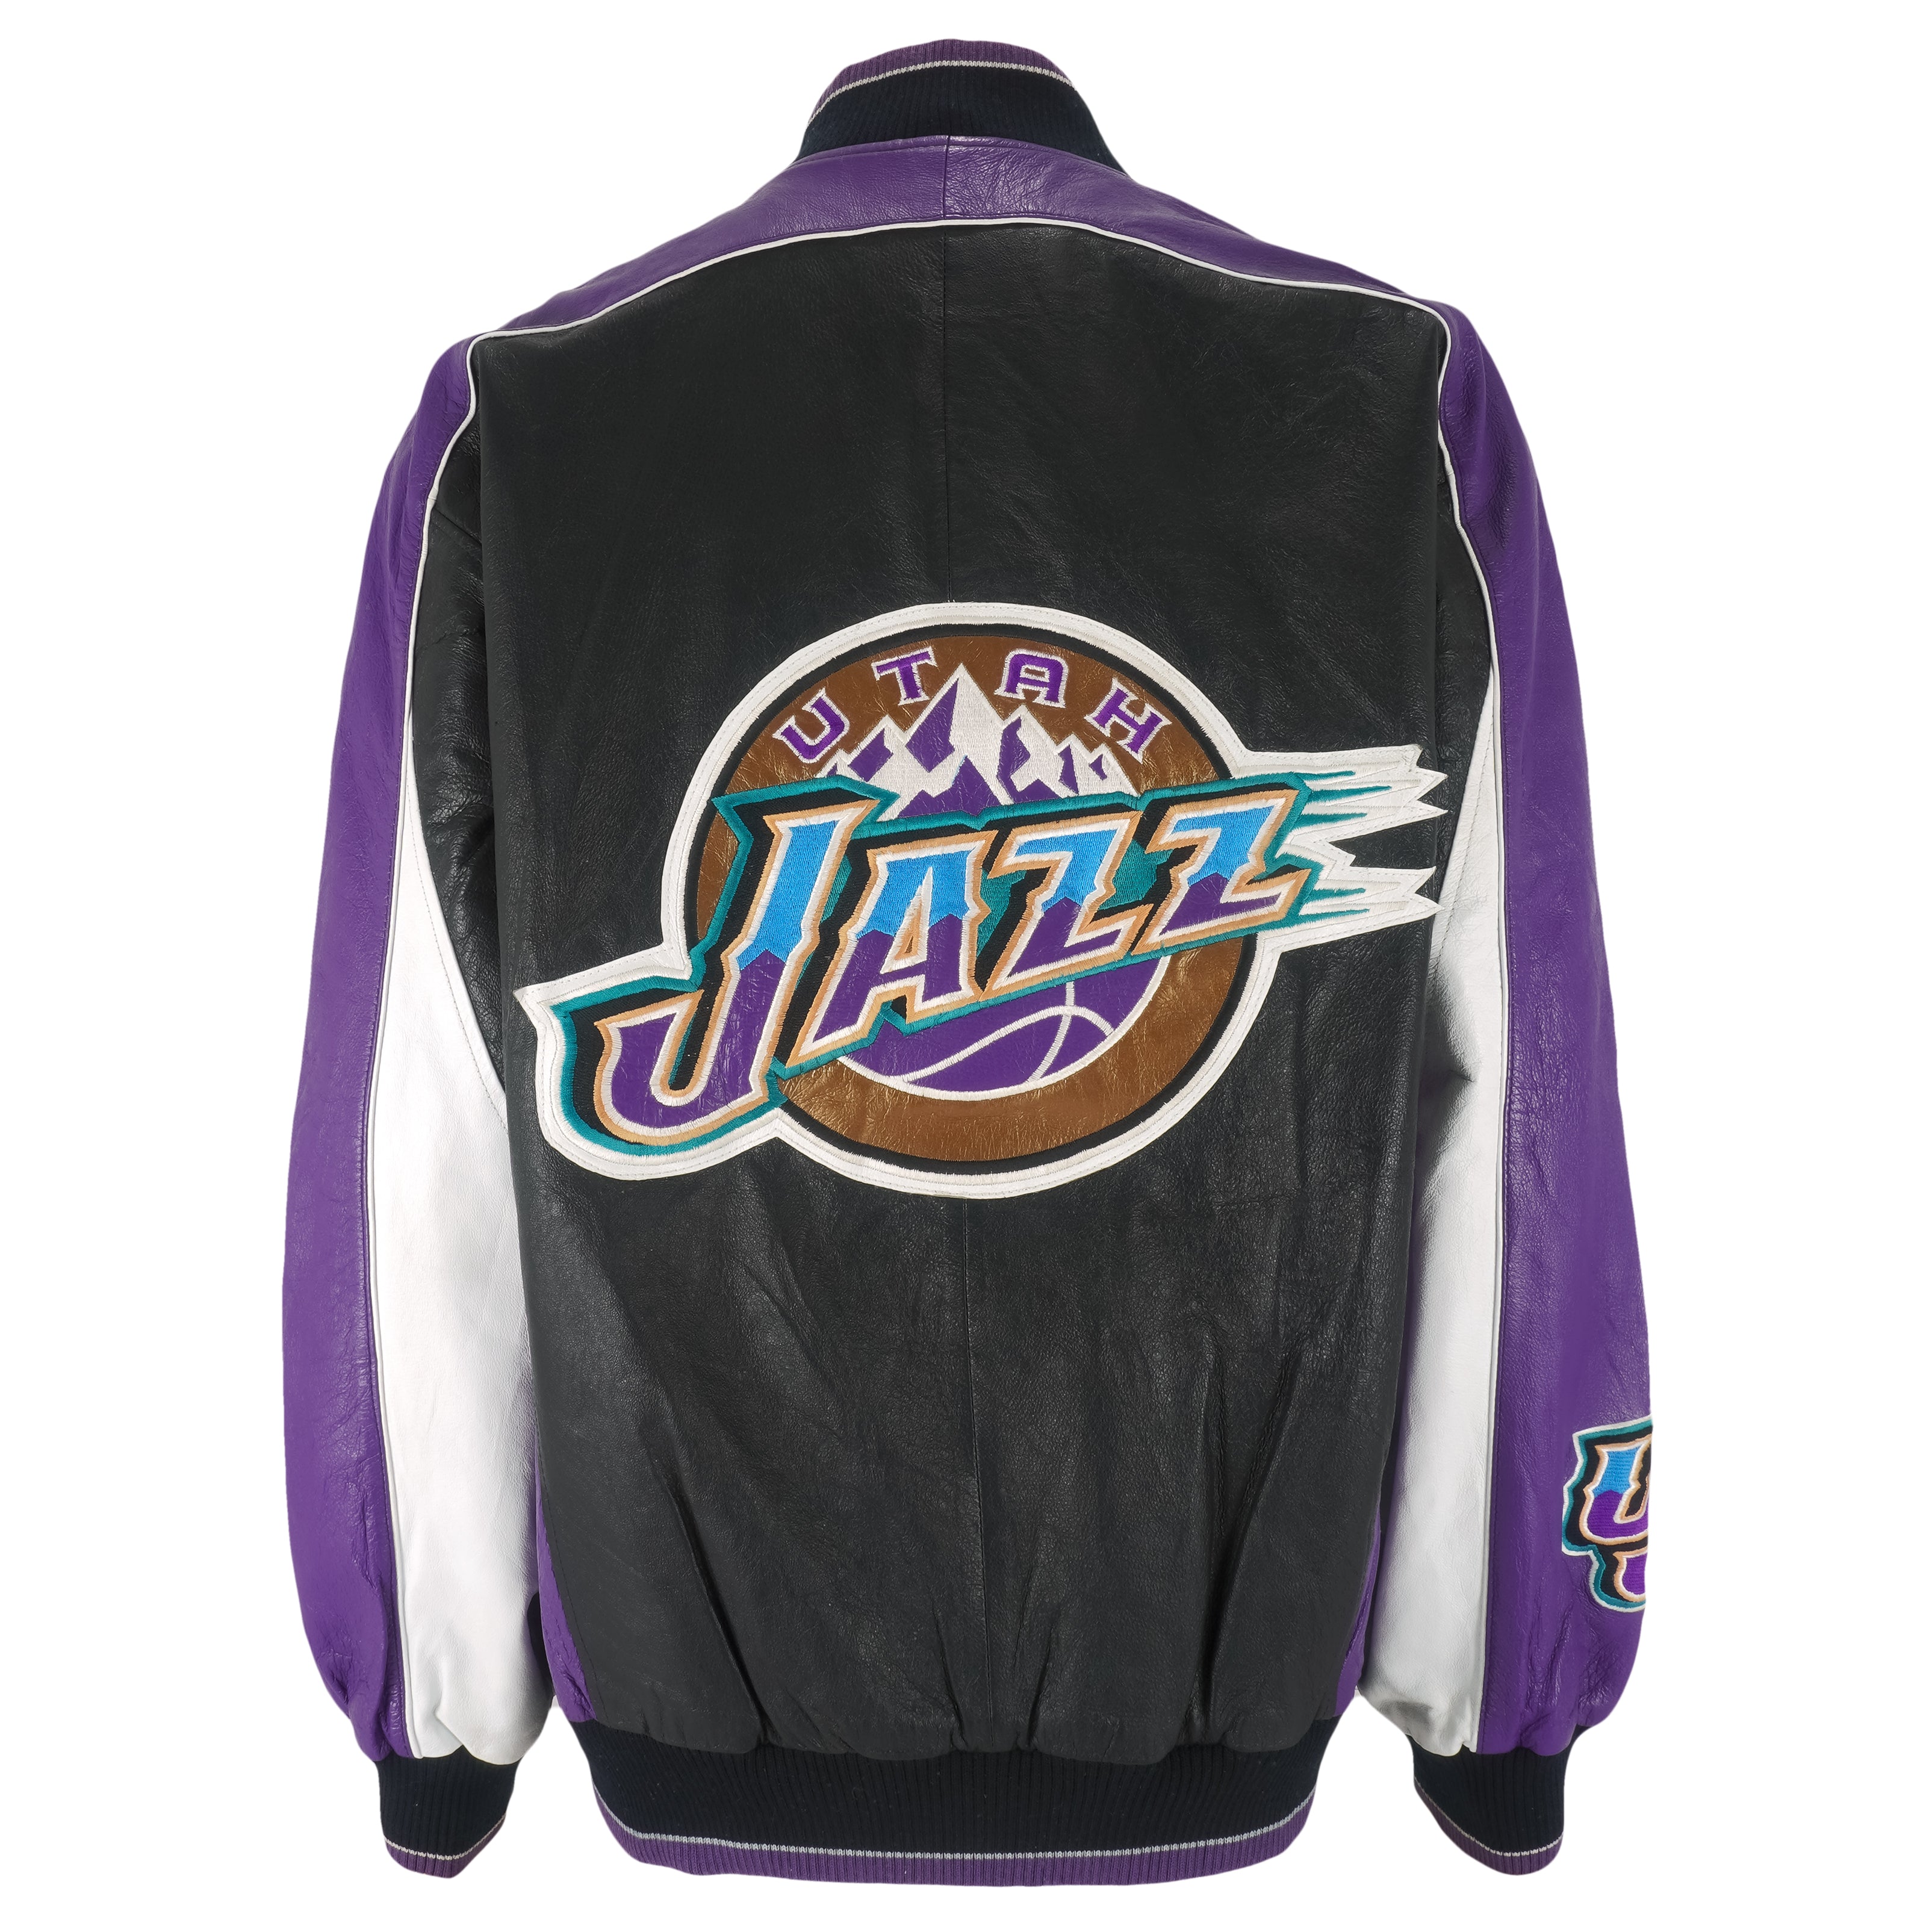 vintage utah jazz jacket